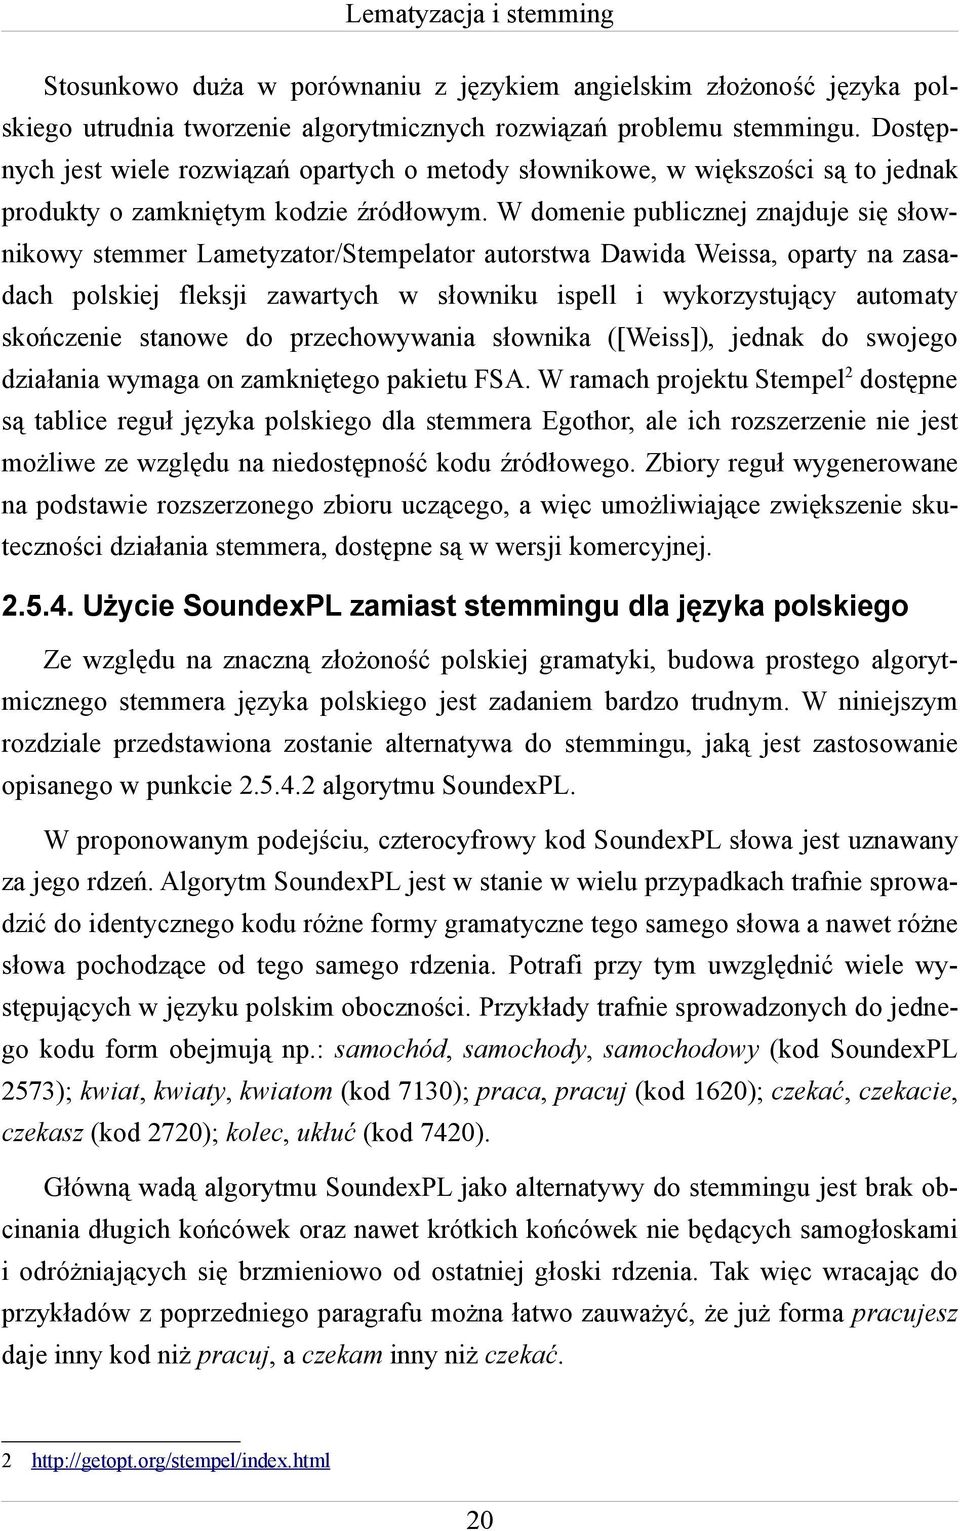 W domenie publicznej znajduje się słownikowy stemmer Lametyzator/Stempelator autorstwa Dawida Weissa, oparty na zasadach polskiej fleksji zawartych w słowniku ispell i wykorzystujący automaty